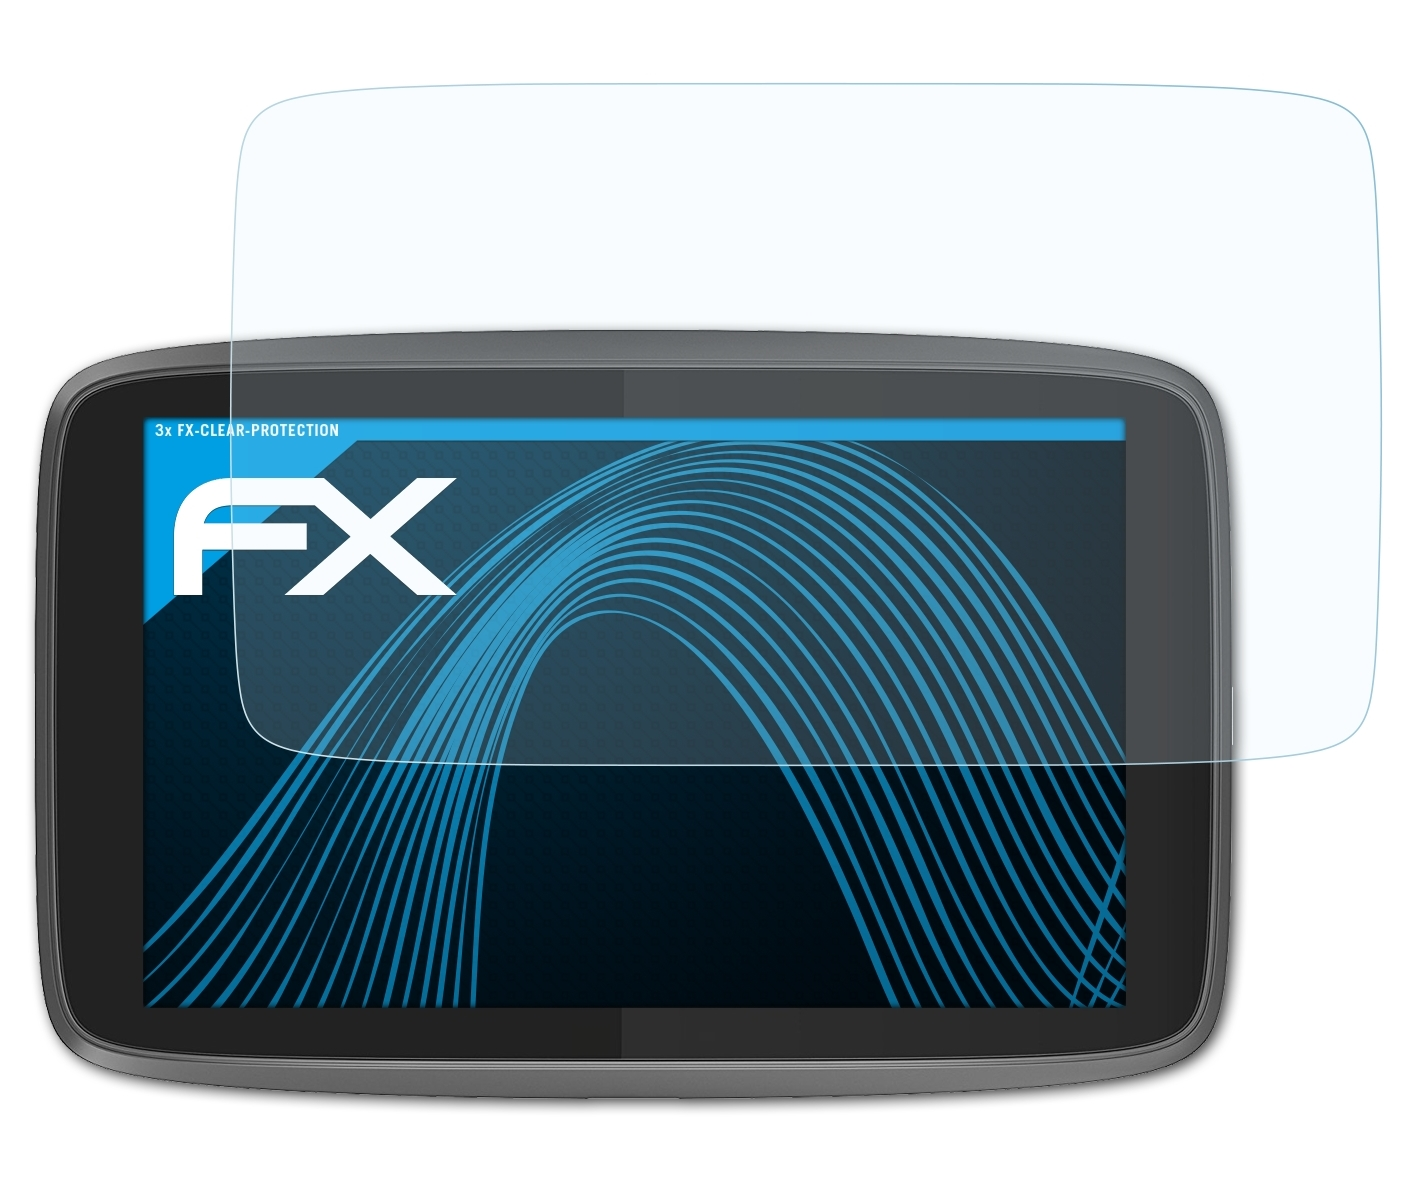 3x Professional Go Displayschutz(für ATFOLIX 620) TomTom FX-Clear